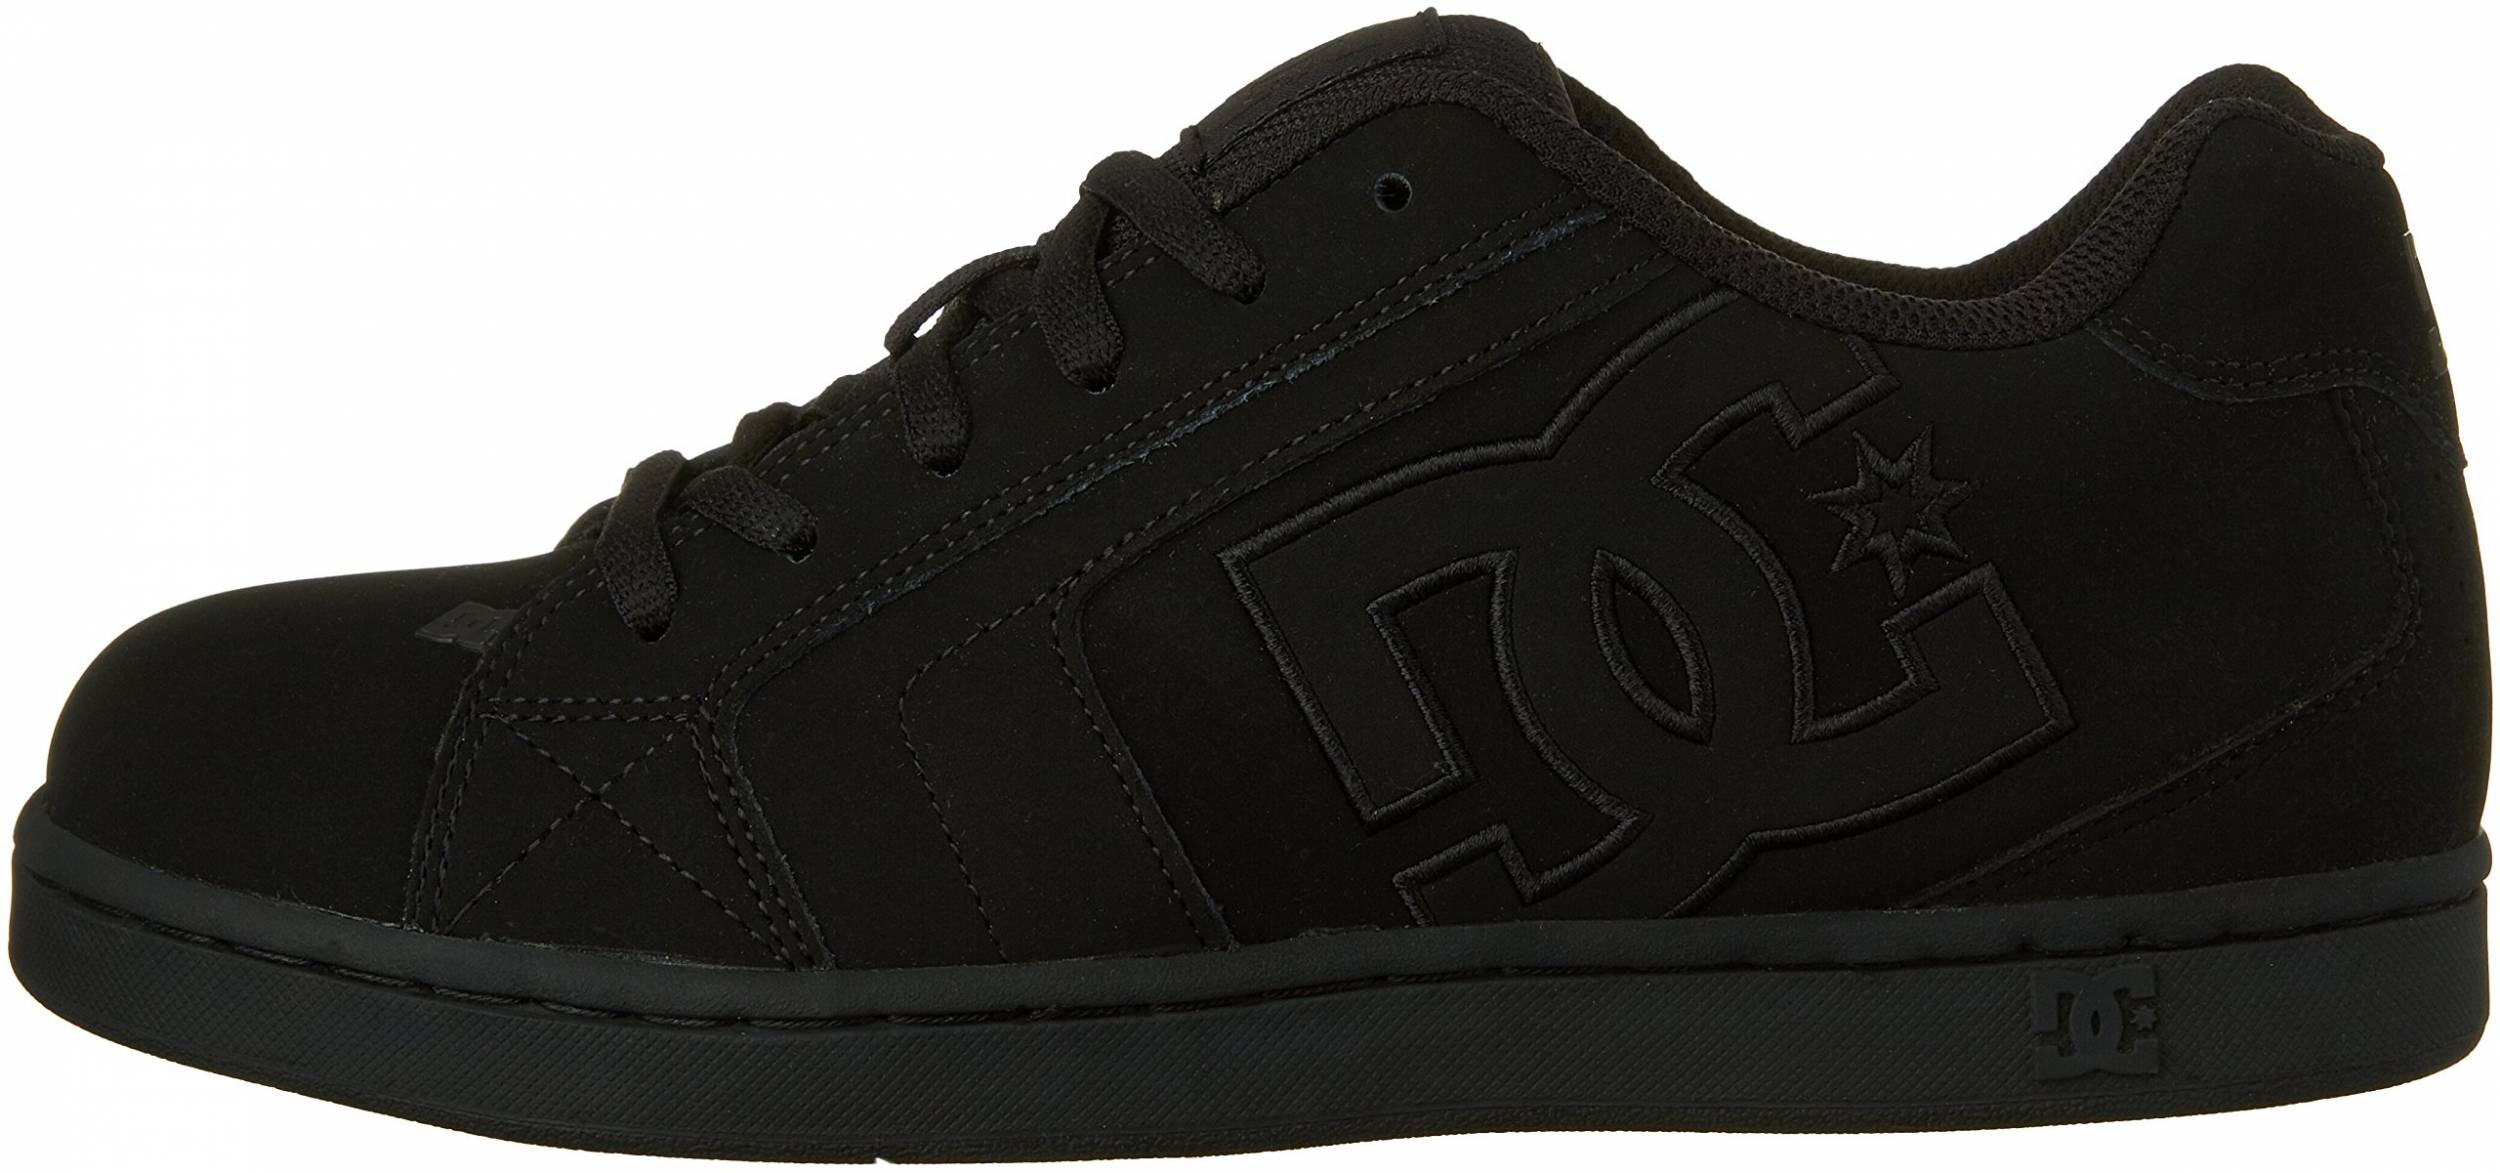 dc shoes net black